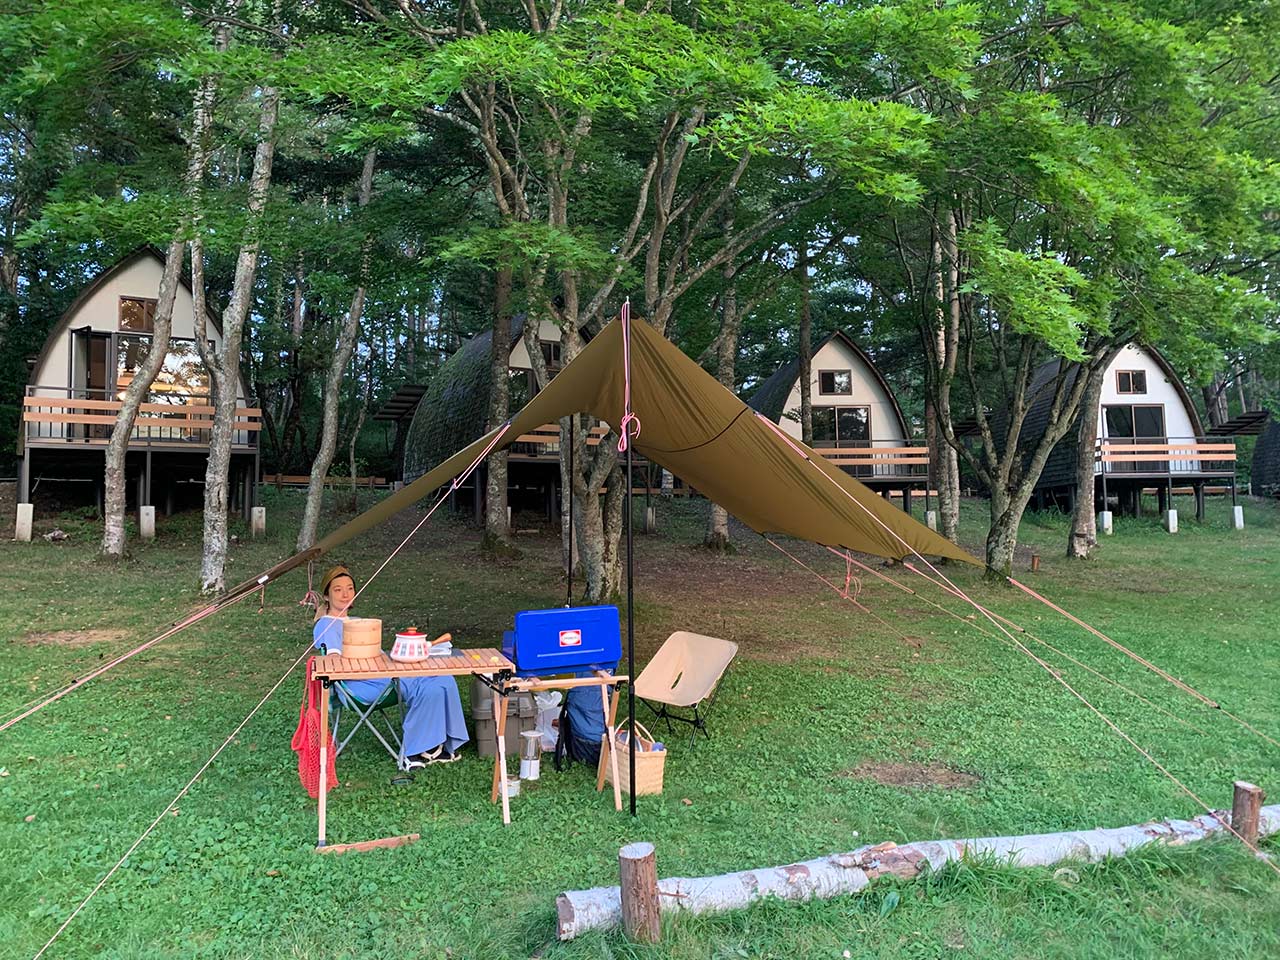 初めてのキャビンキャンプ。自然の中で友里さんもおなかの赤ちゃんもリラックスしたことでしょうね。